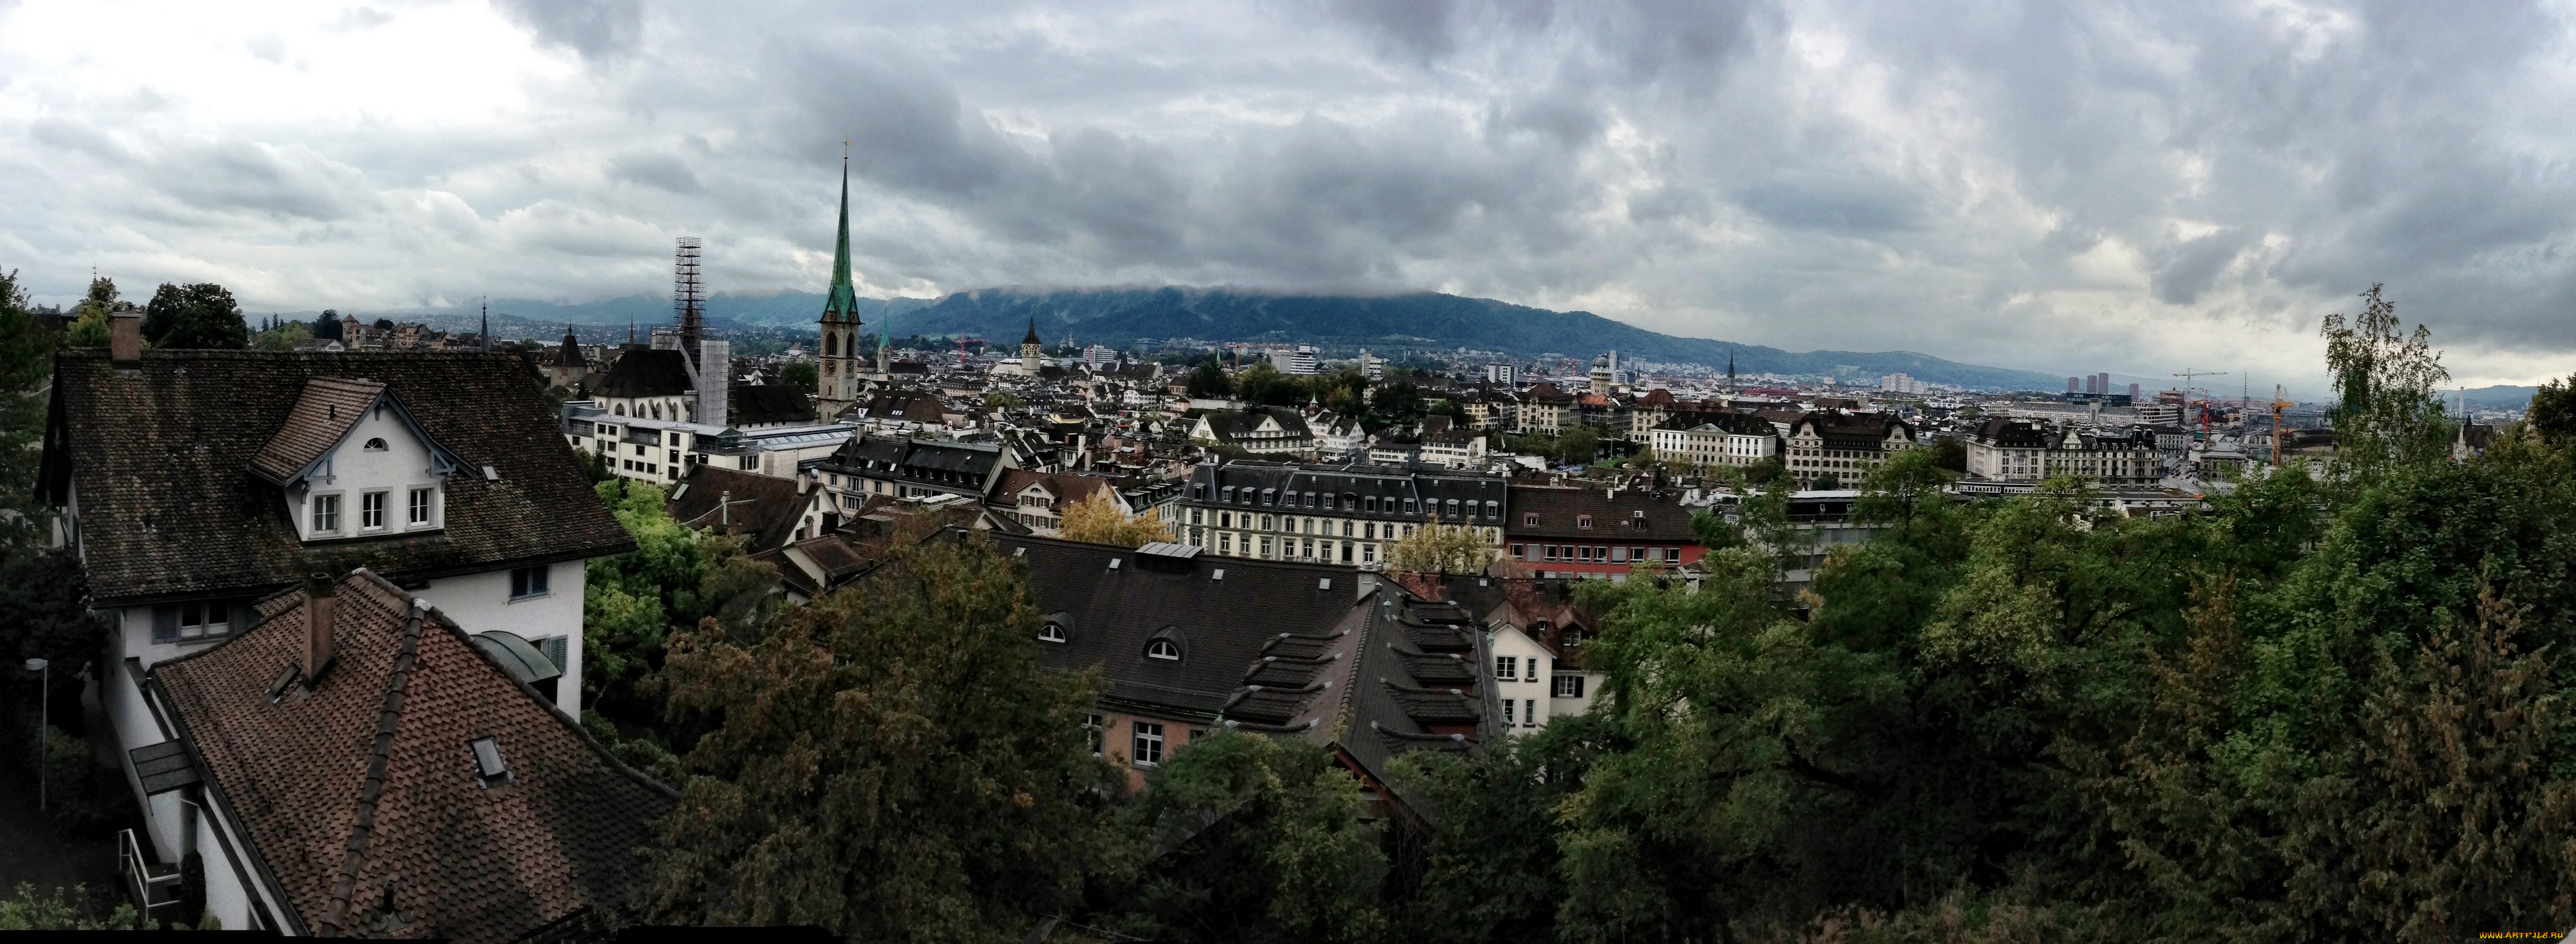 города, цюрих, швейцария, панорама, вид, сверху